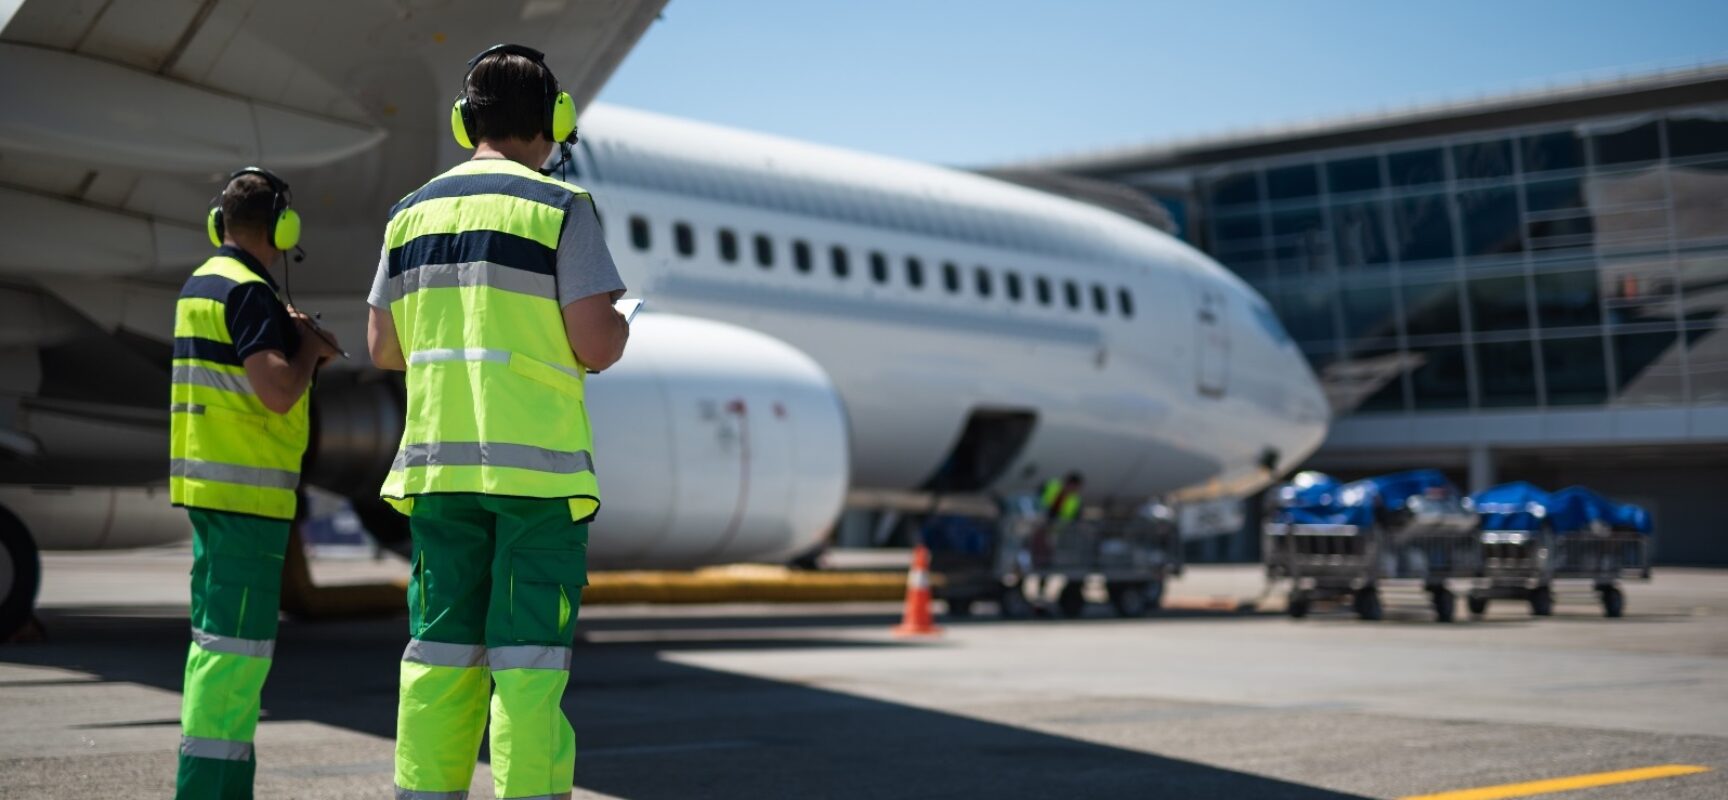 Aeroporti di Puglia cerca 80 addetti di scalo a Bari e Brindisi / COME CANDIDARSI